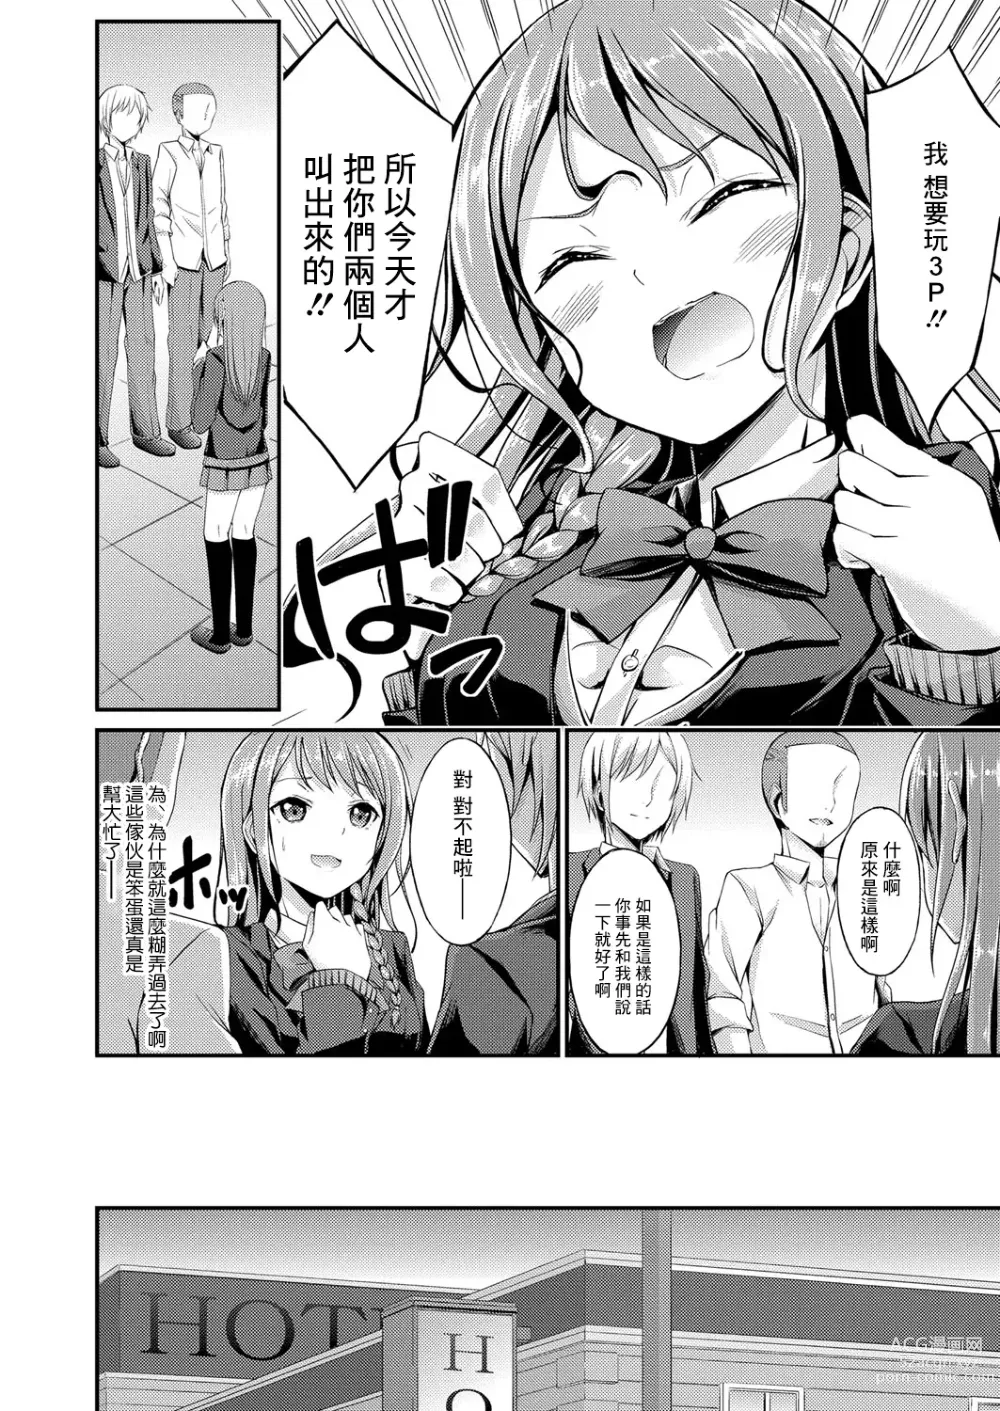 Page 6 of manga Himitsu no Asobi